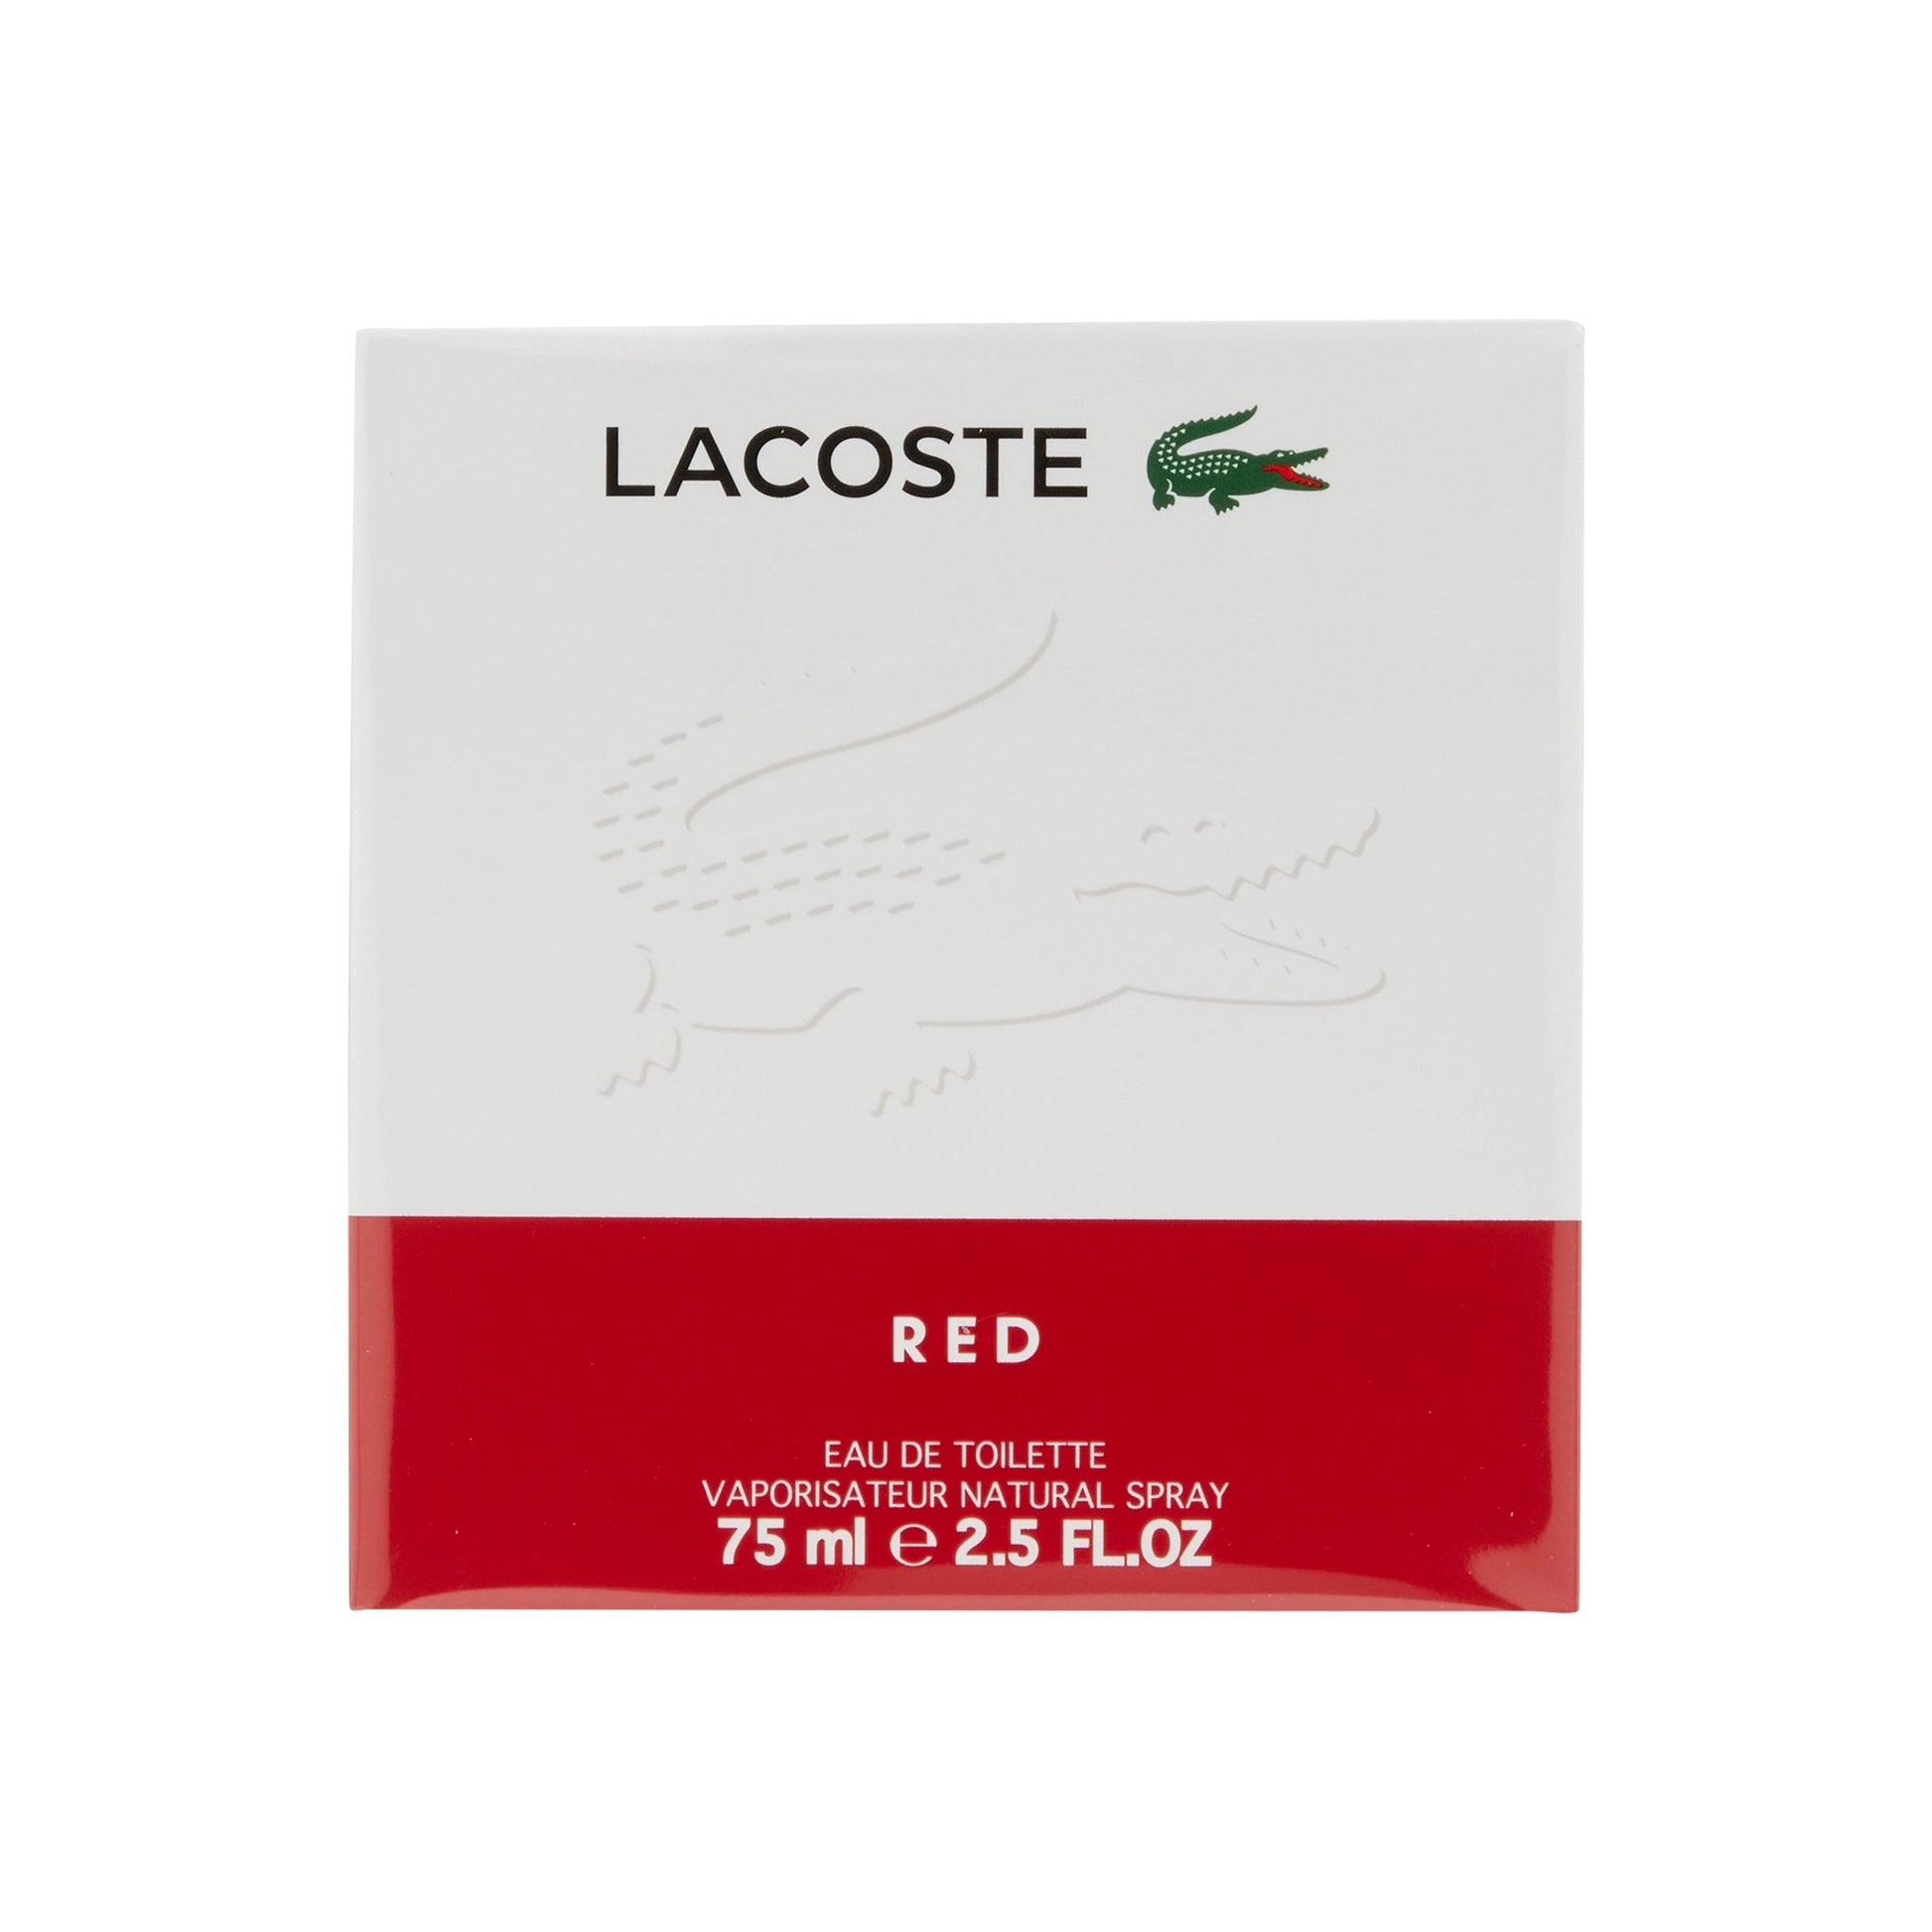 Red Eau de Toilette Spray for Men by Lacoste, Product image 1